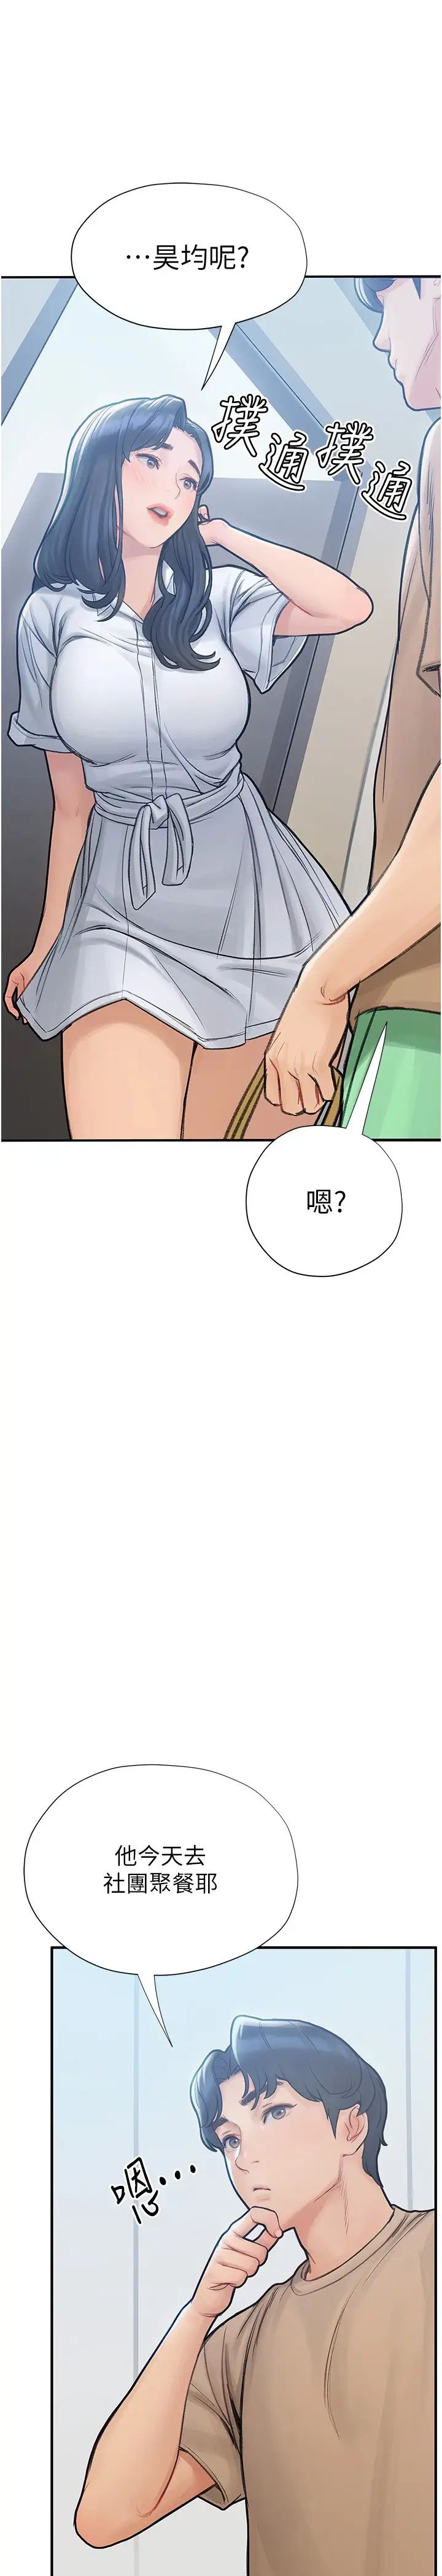 韩国污漫画 終曖昧結 第5话女友的「特别」服务 44